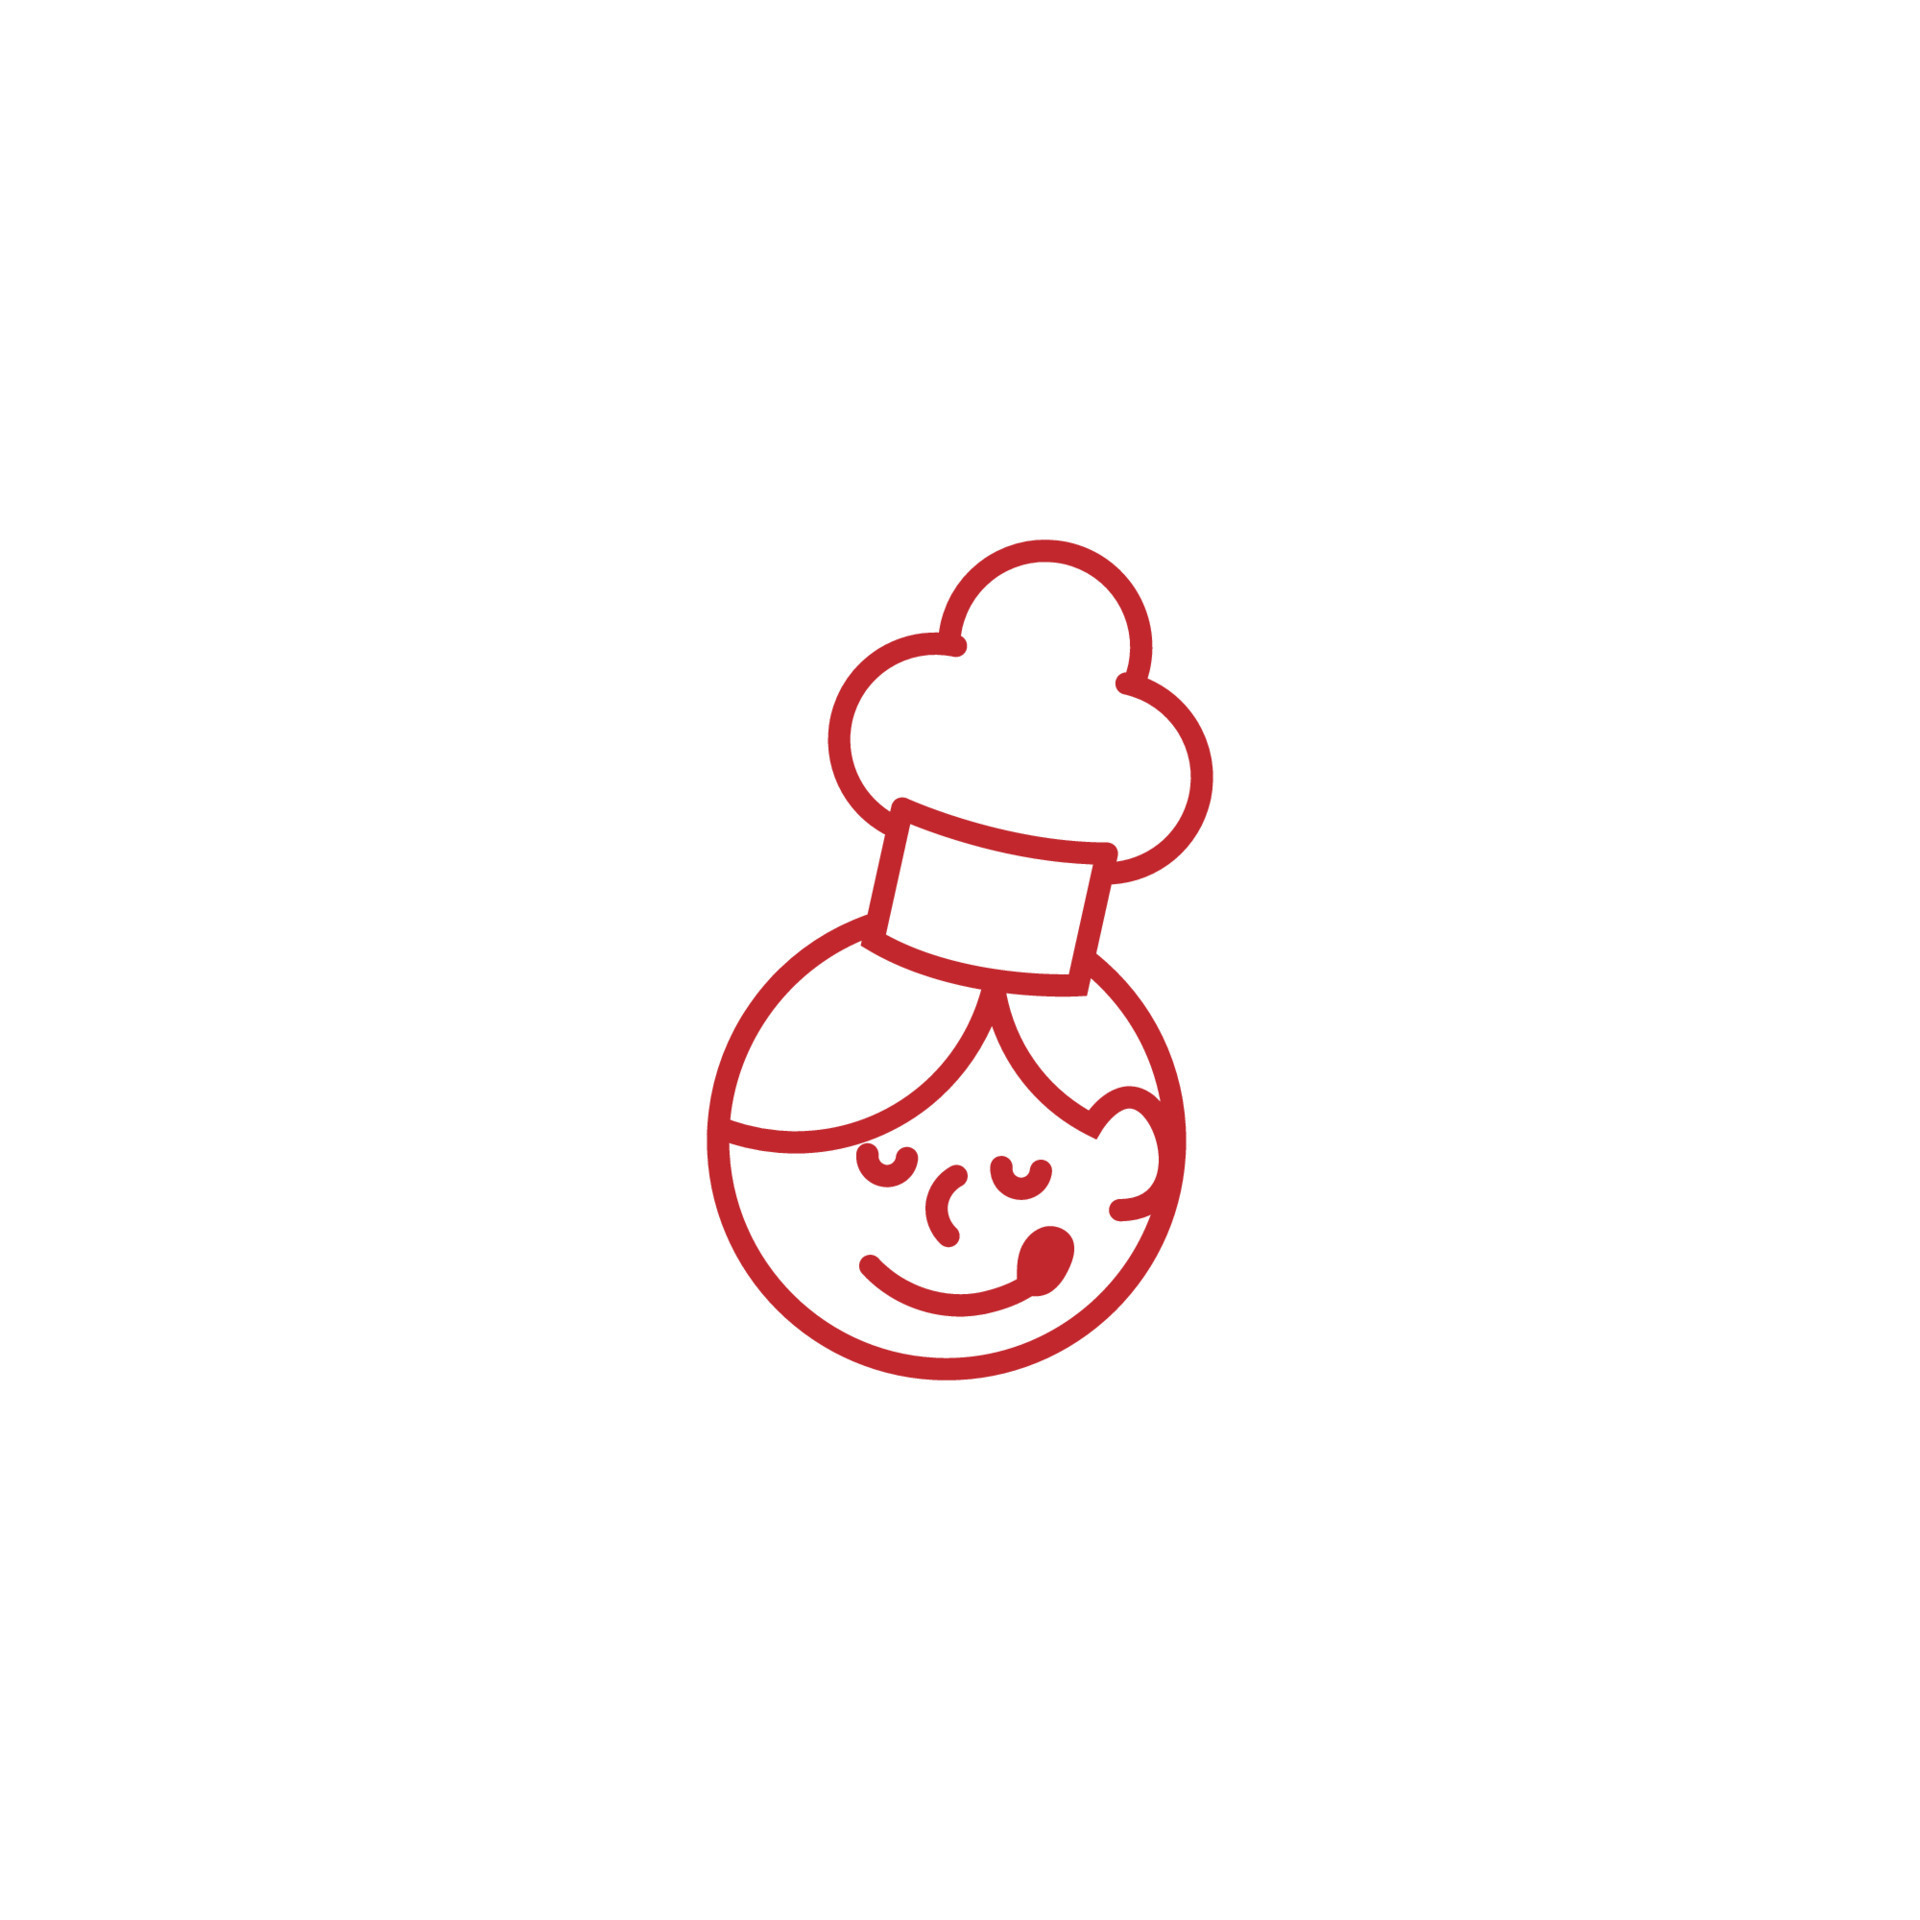 Cute Cartoon Chef Logo Design. Good for kids happy cooking, restaurants,  etc. vector art illustrations 7625601 Vector Art at Vecteezy